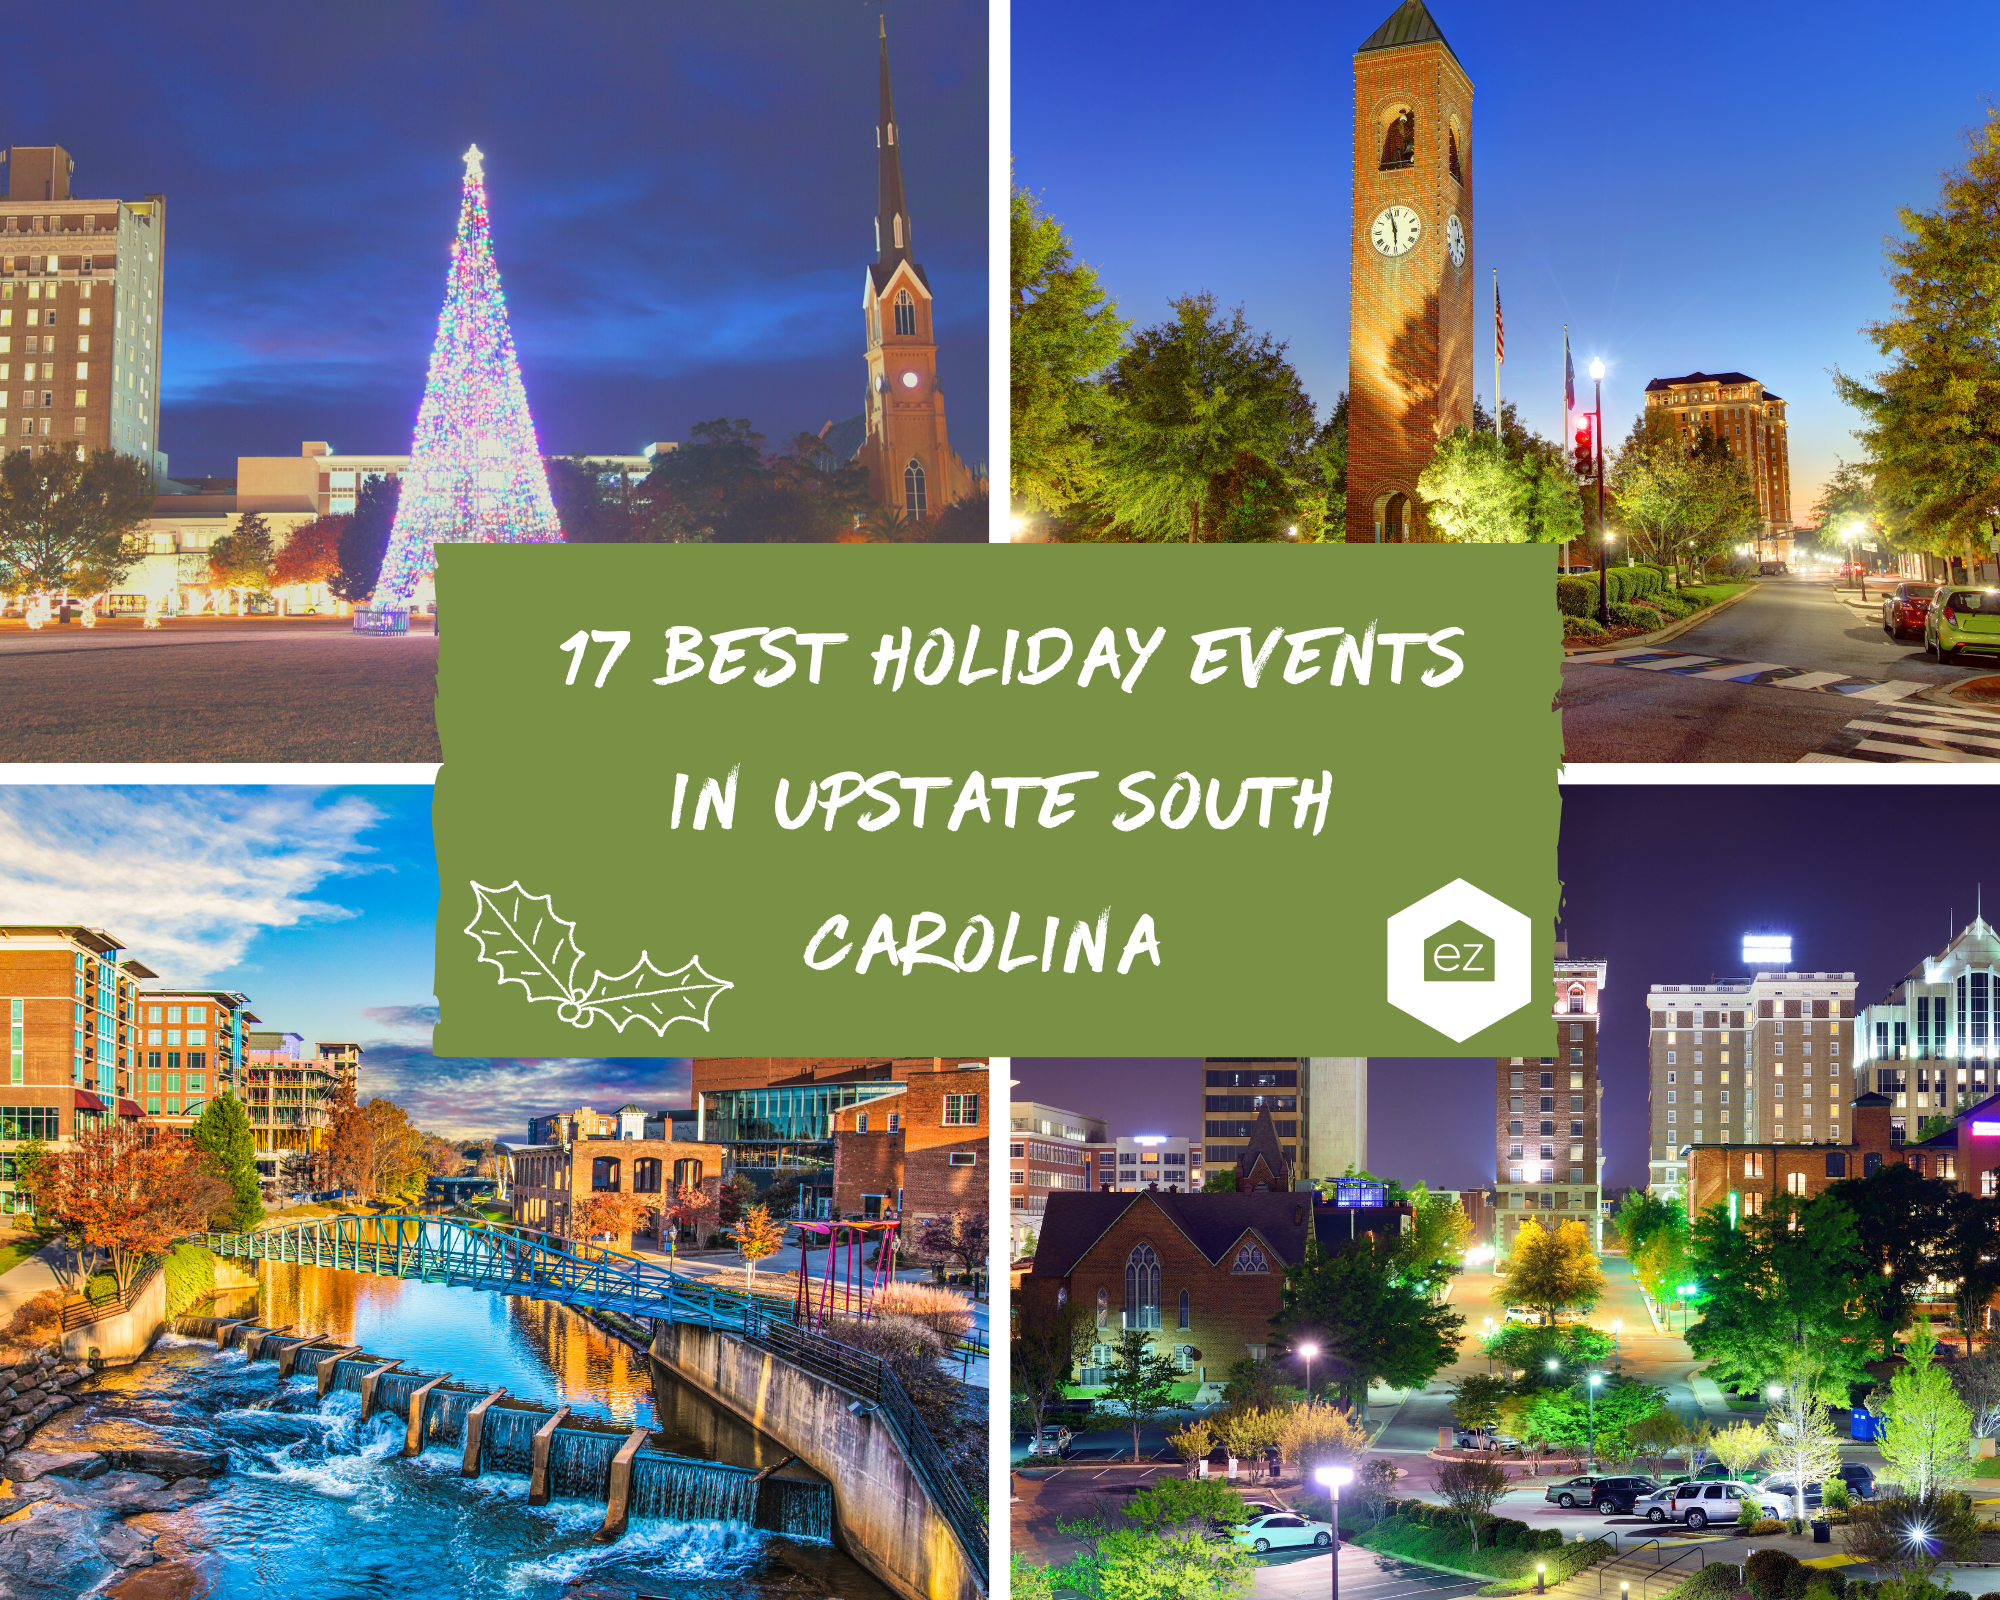 Photos of Upstate South Carolina Cities